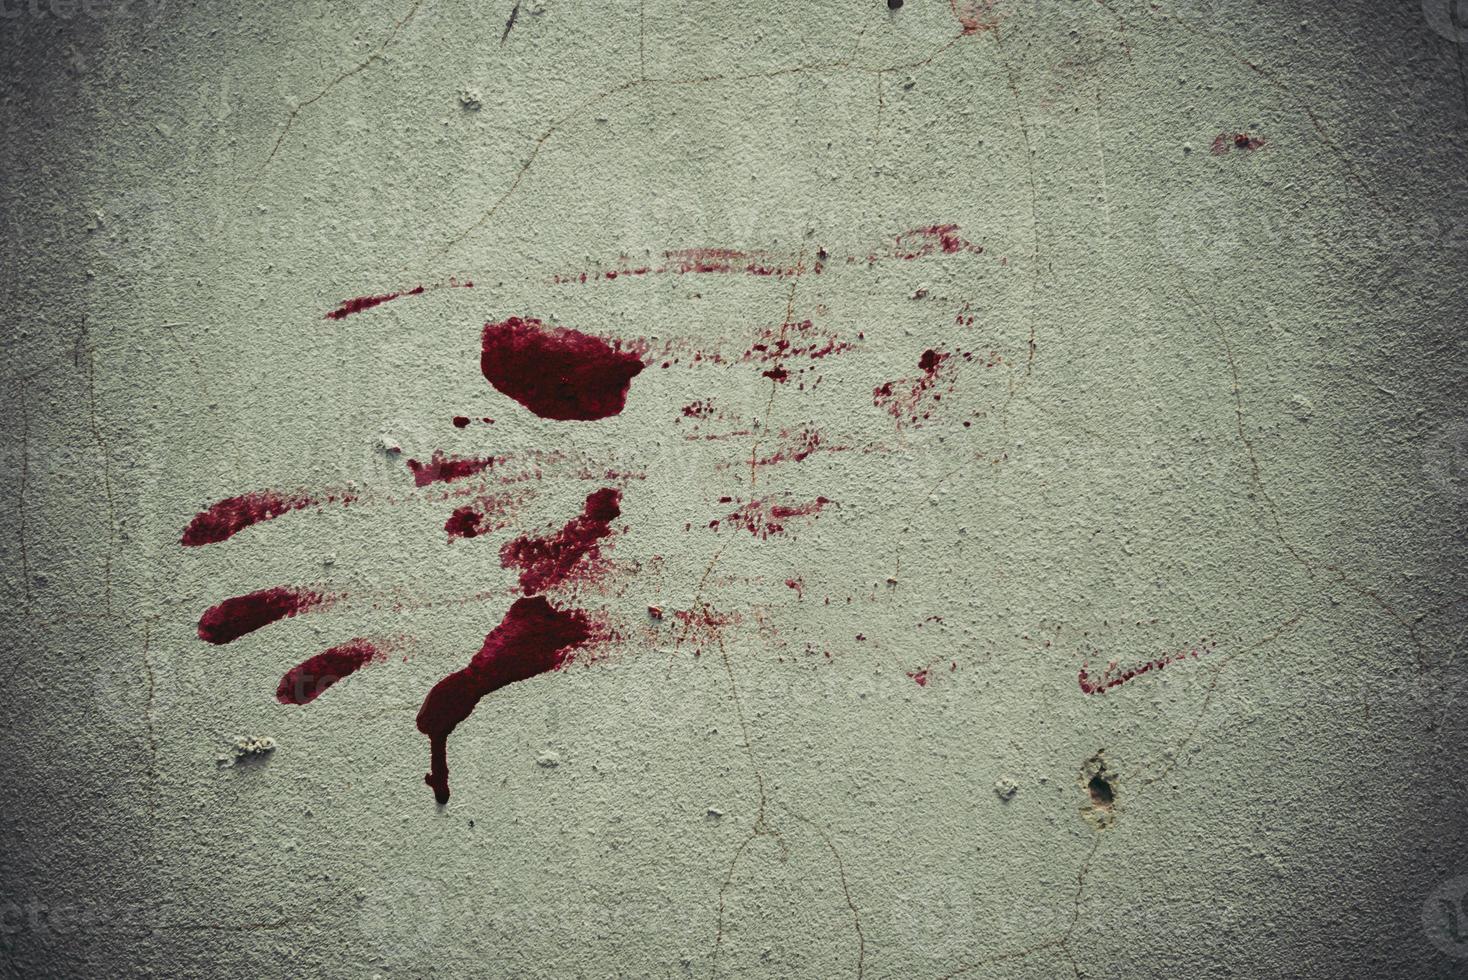 sangue vermelho como forma de mão presa na parede do grunge foto